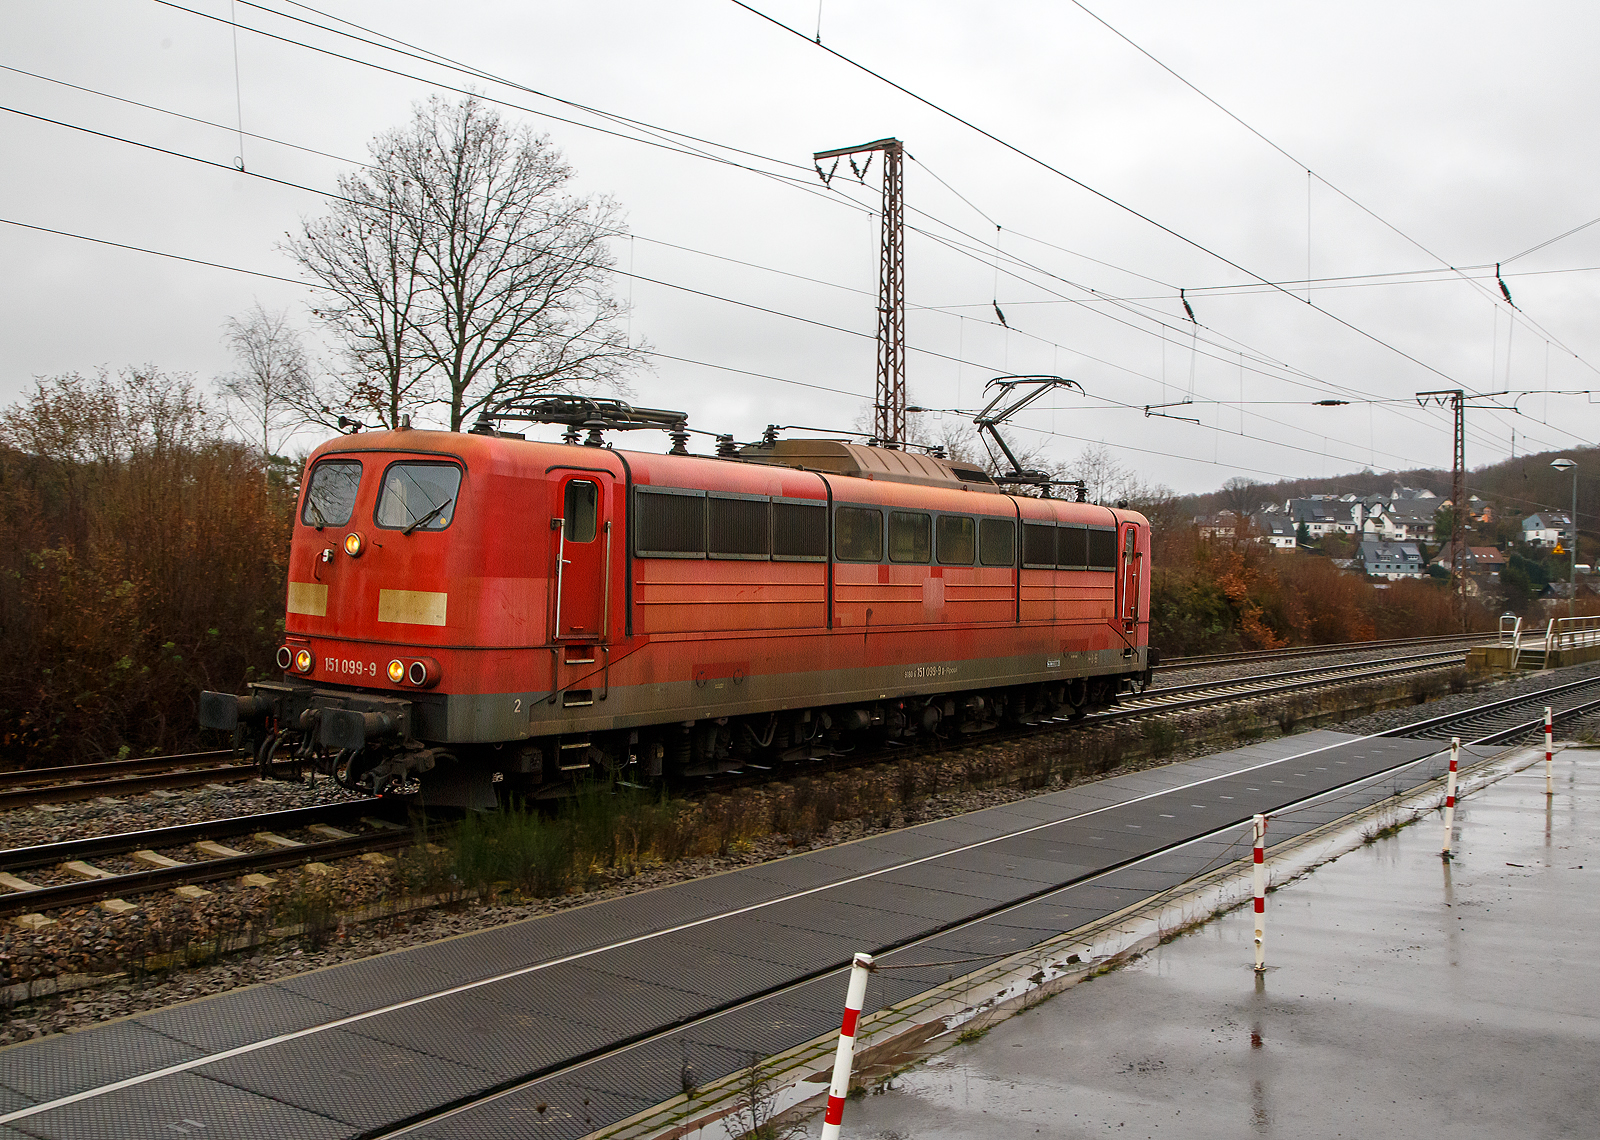 Nach getaner Arbeit vom Nachschieben wieder auf der Rücktour....
Die DB Cargo AG vermietete Railpool 151 099-9 (91 80 6151 099-9 D-Rpool), fährt am 20.03.2021 als Lz (Lokzug) durch Rudersdorf (Kr. Siegen) über die Dillstrecke (KBS 445) in Richtung Kreuztal.

Die Lok wurde 1976 von Krupp unter der Fabriknummer 5349 gebaut und an die Deutsche Bundesbahn geliefert. Bis 31.12.2016 gehörte sie zur DB Cargo AG. Zum 01.01.2017 wurden je 100 sechsachsige elektrische Altbau-Lokomotiven der Baureihen 151 und 155 an ein Konsortium aus dem Lokvermieter Railpool verkauft. Die DB Cargo mietet daraufhin 100 Loks von Railpool wieder an. Die anderen Maschinen werden dem freien Markt angeboten.
